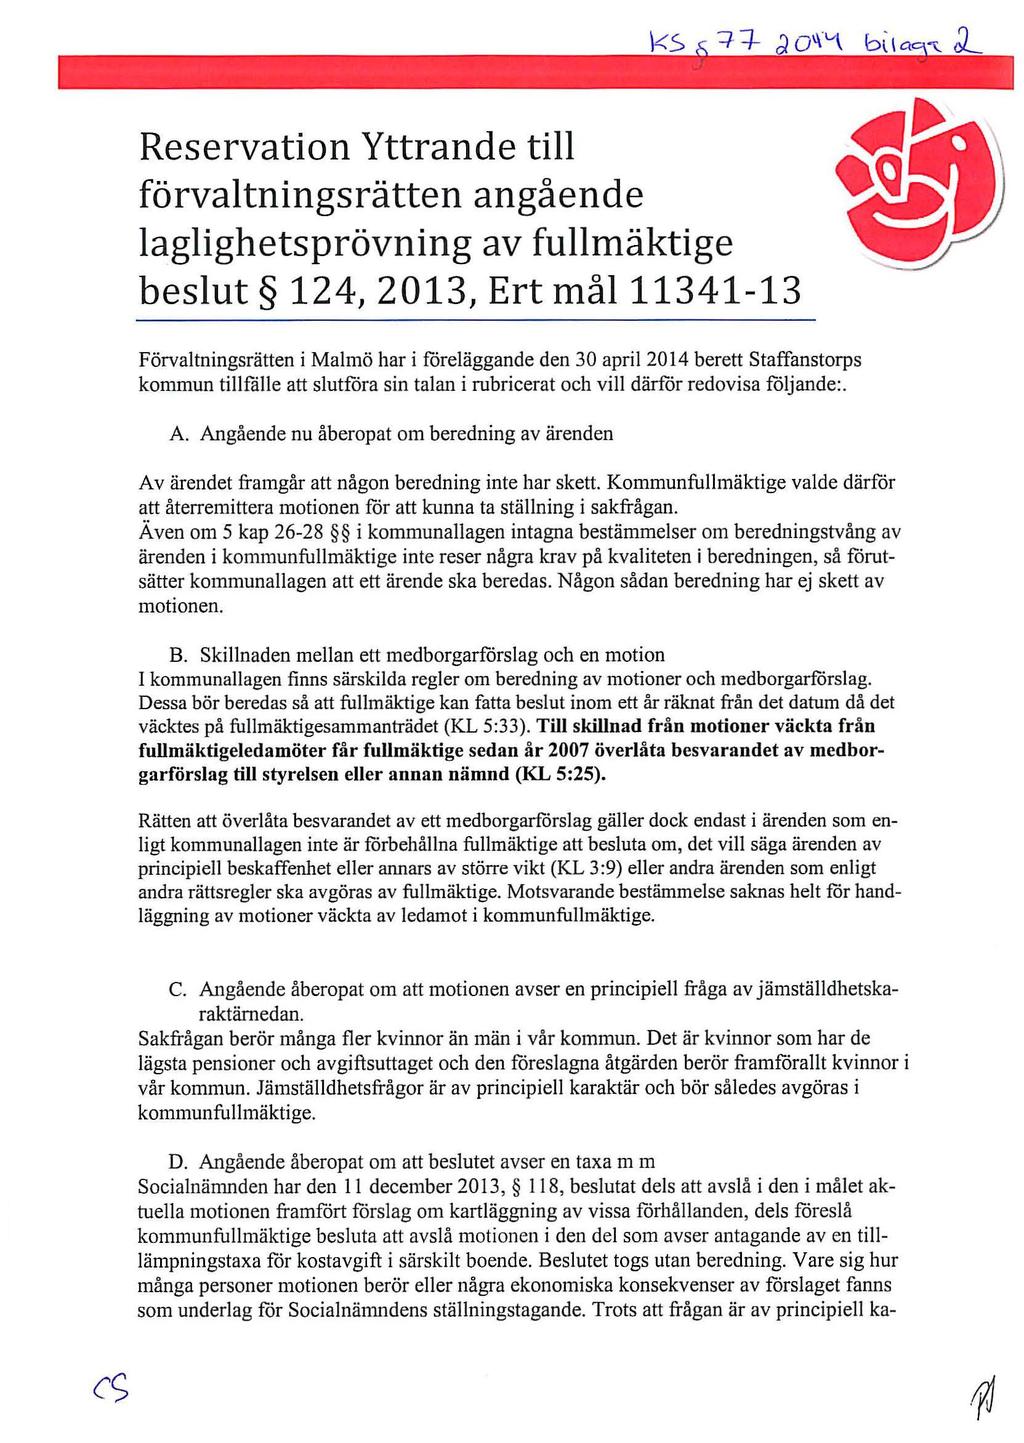 Reservation Yttrande till förvaltningsrätten angående laglighetsprövning av fullmäktige beslut 124, 2013, Ert mål11341-13 Förvaltningsrätten i Malmö har i föreläggande den 30 april 2014 berett